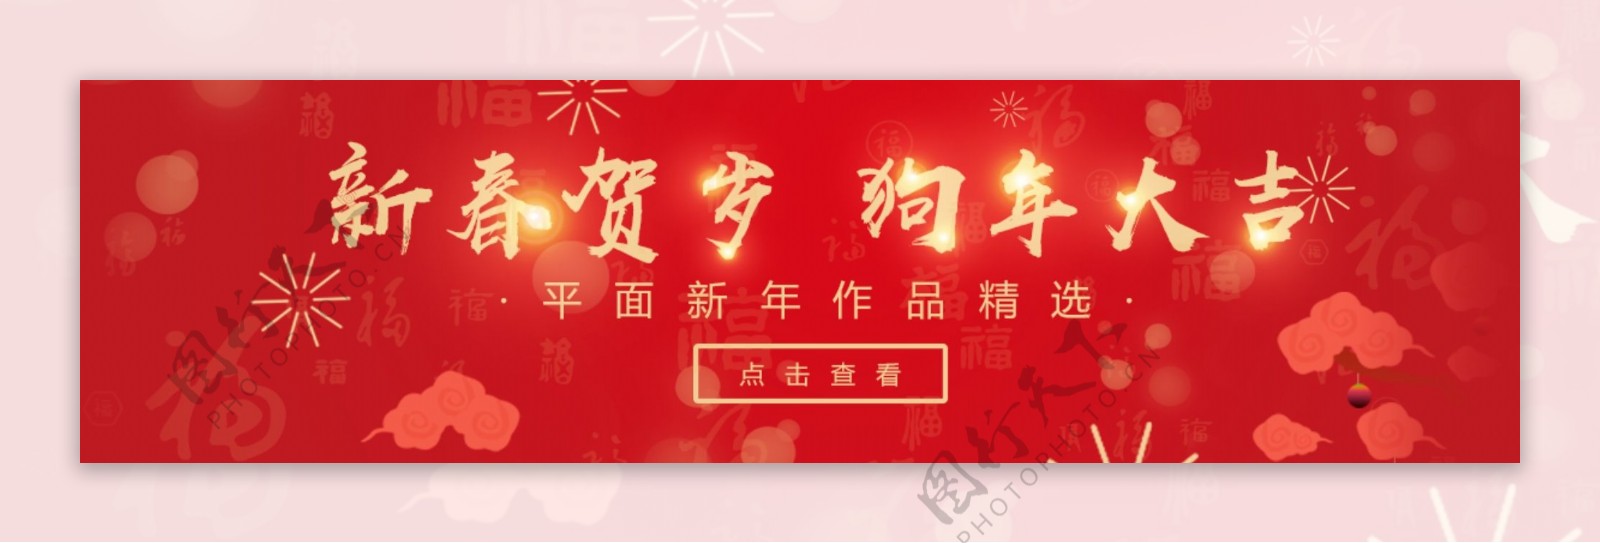 中国风红色喜庆背景新年贺岁狗年大吉海报